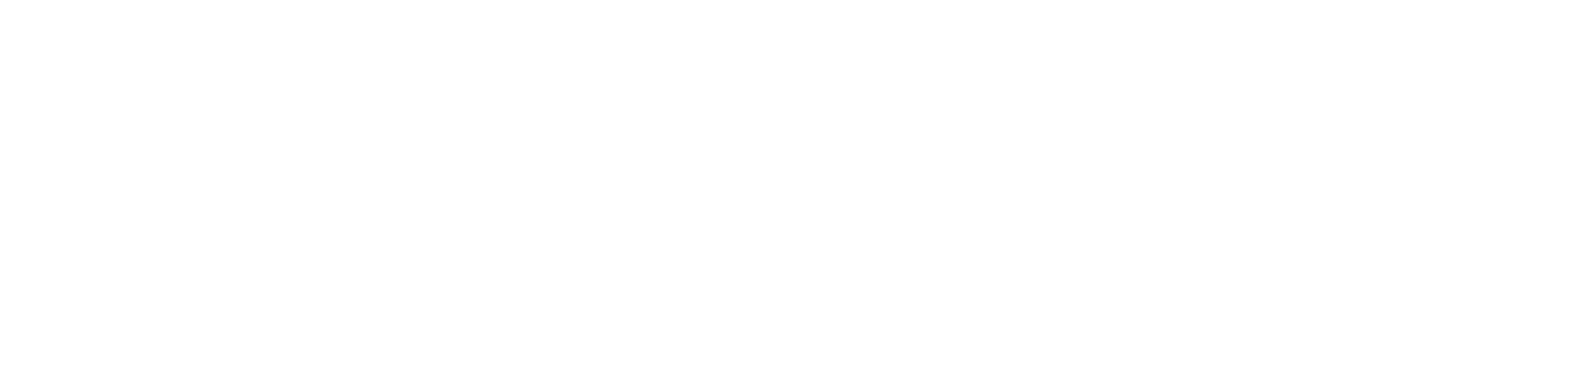 Yageo logo large for dark backgrounds (transparent PNG)